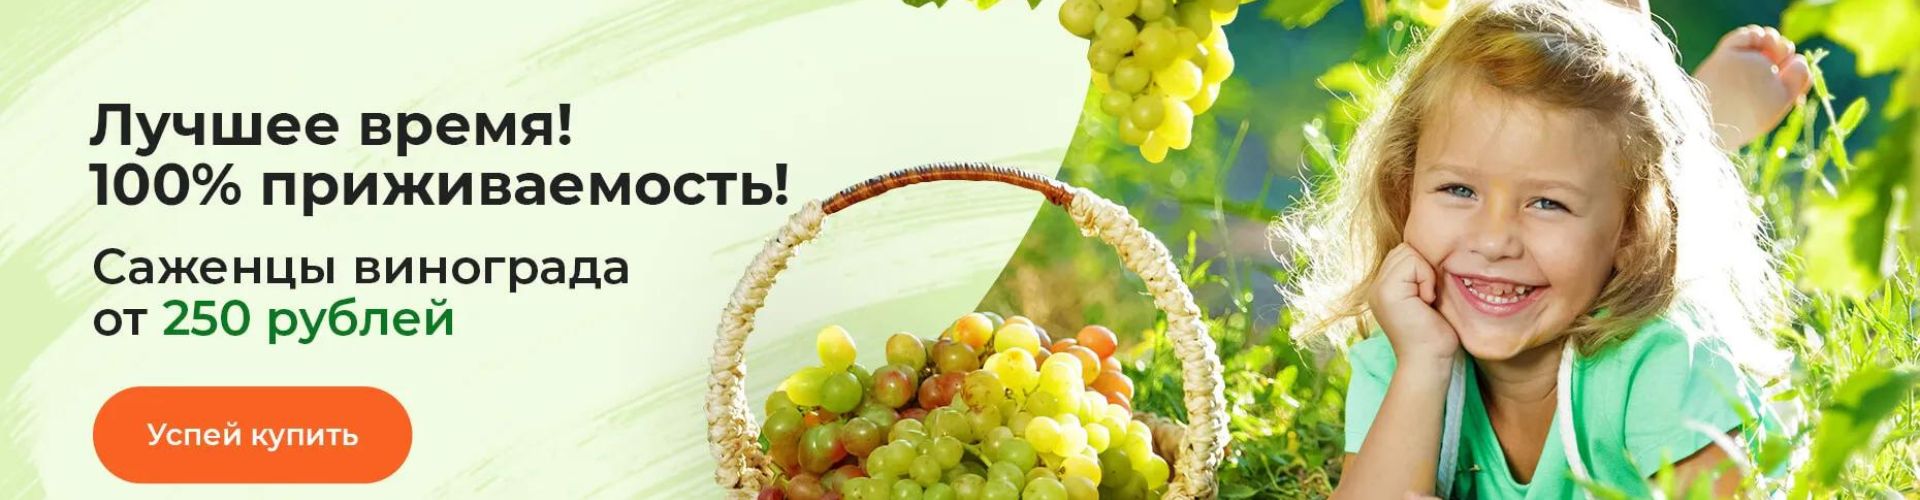 Саженцы винограда от 250 рублей в Гарденмарт